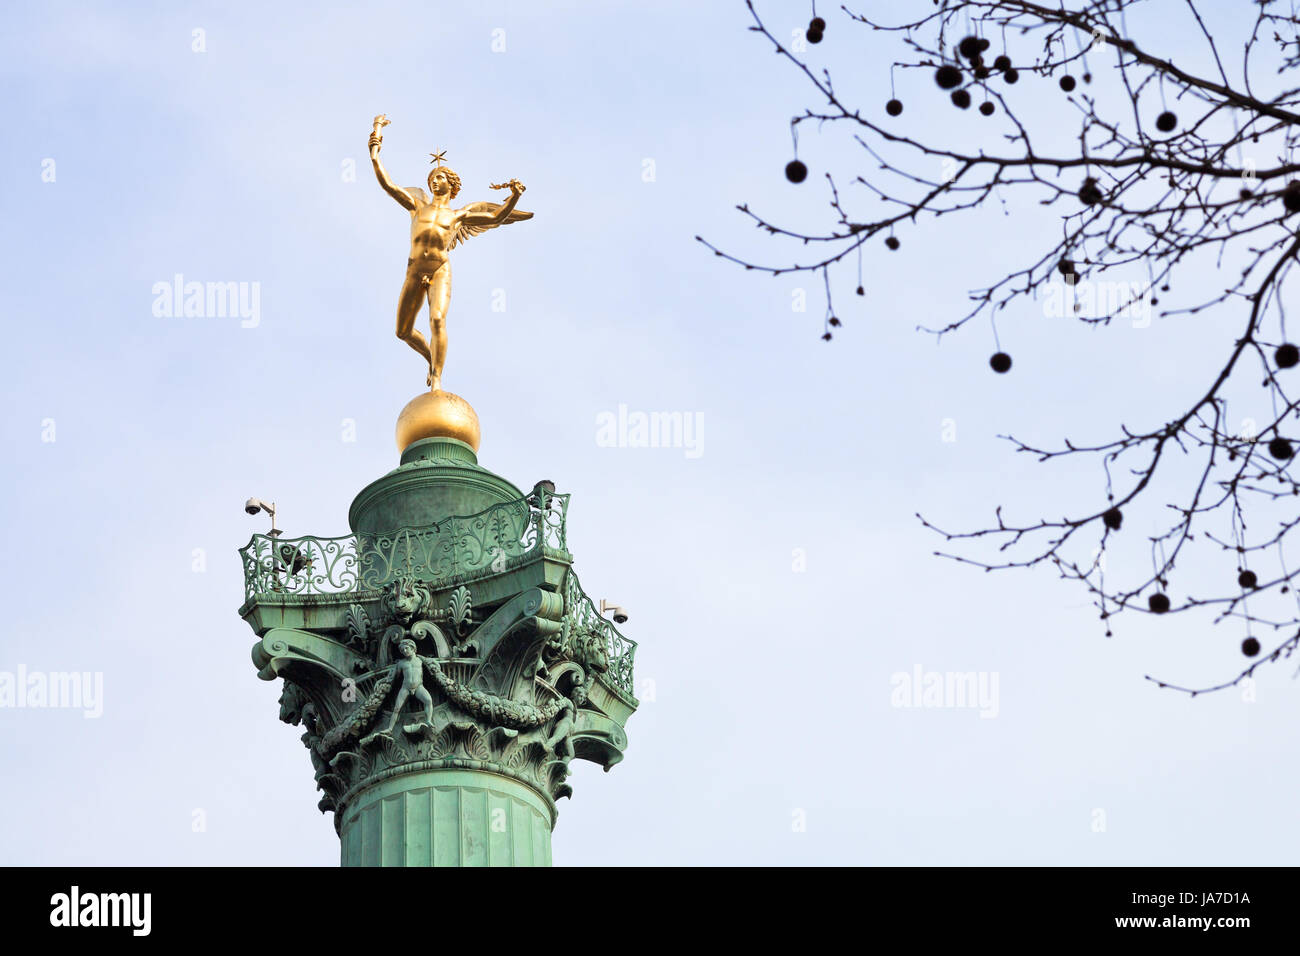 PARIS, Frankreich - März 6: Statue Genie De La Liberte im Juli Spalte am Place De La Bastille in Paris am 6. März 2013. Obenauf liegt Galerie 4,9 m breit mit Globe auf der Abbildung Genie De La Liberte steht Stockfoto